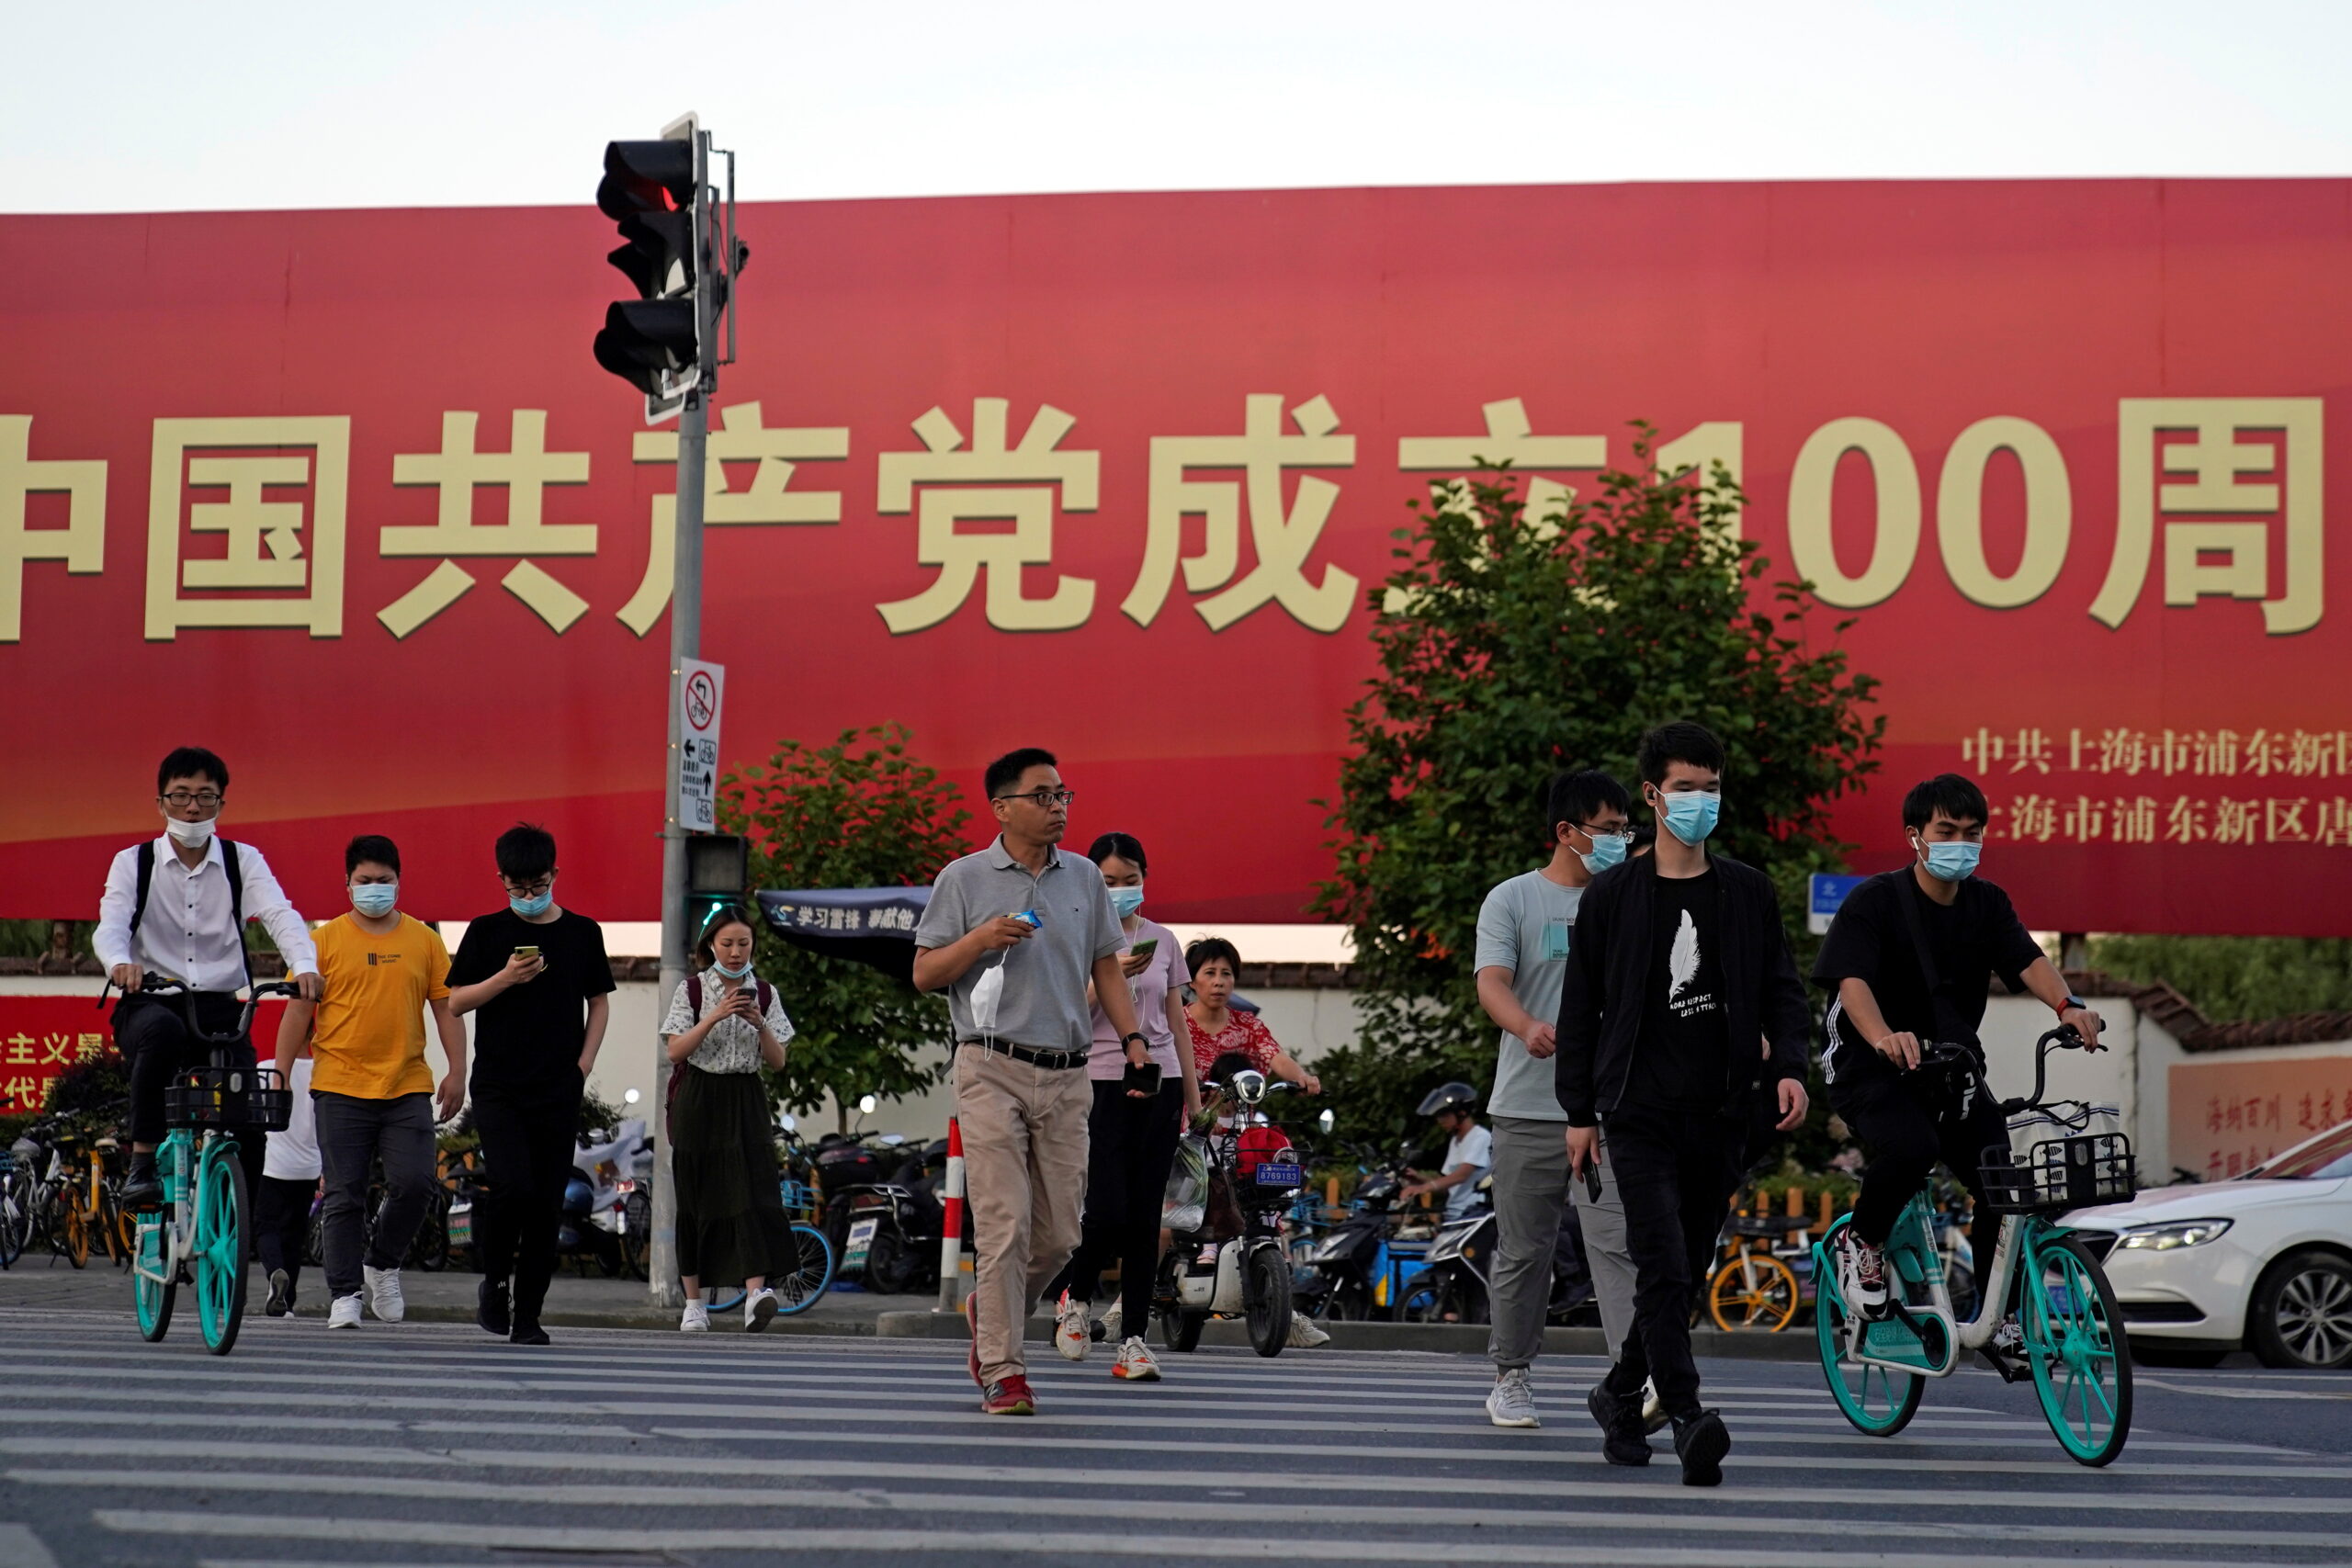 ชาวจีนซื้อสินค้าจีนเพิ่มขึ้น หลังต่อต้านแบรนด์ตะวันตก – ต่างประเทศ